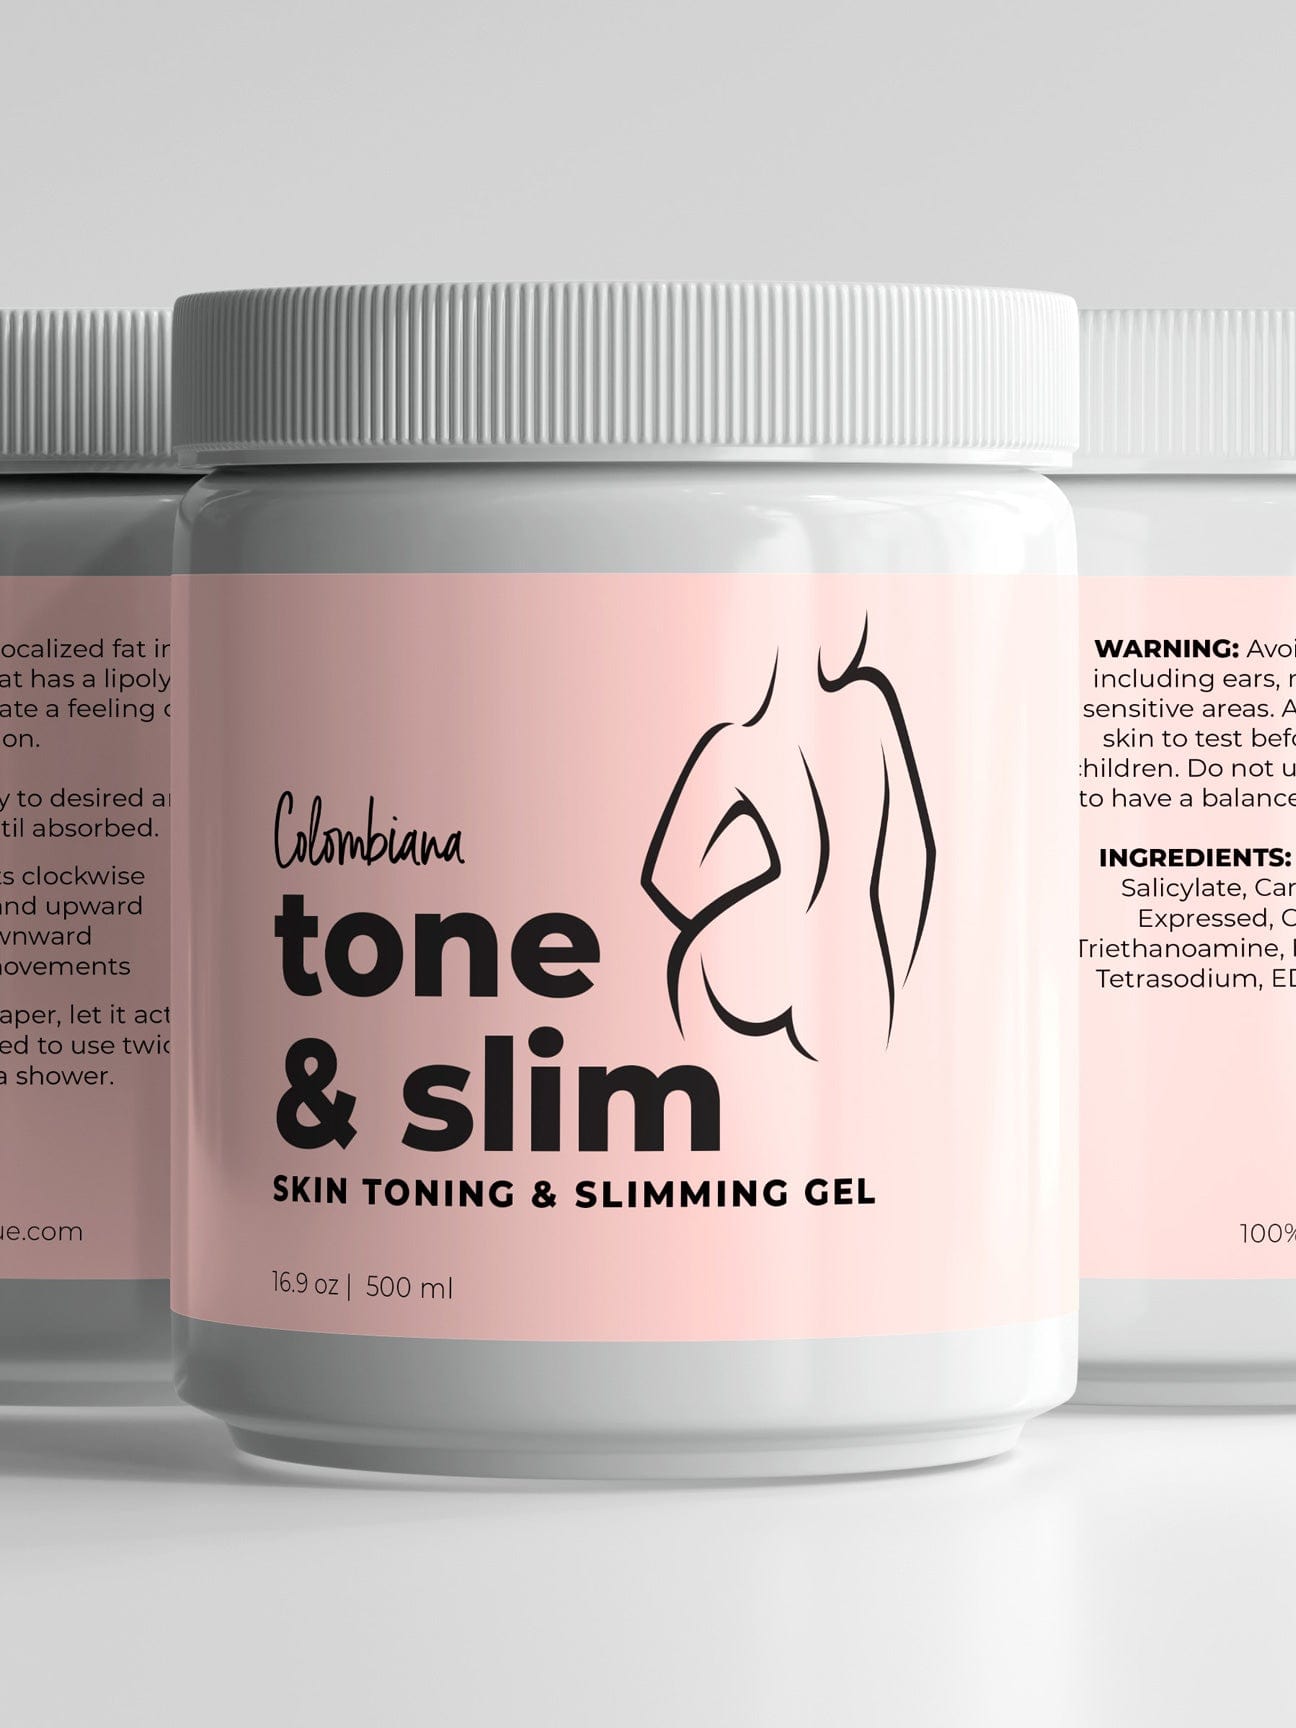 Skin Toning & Slimming Gel